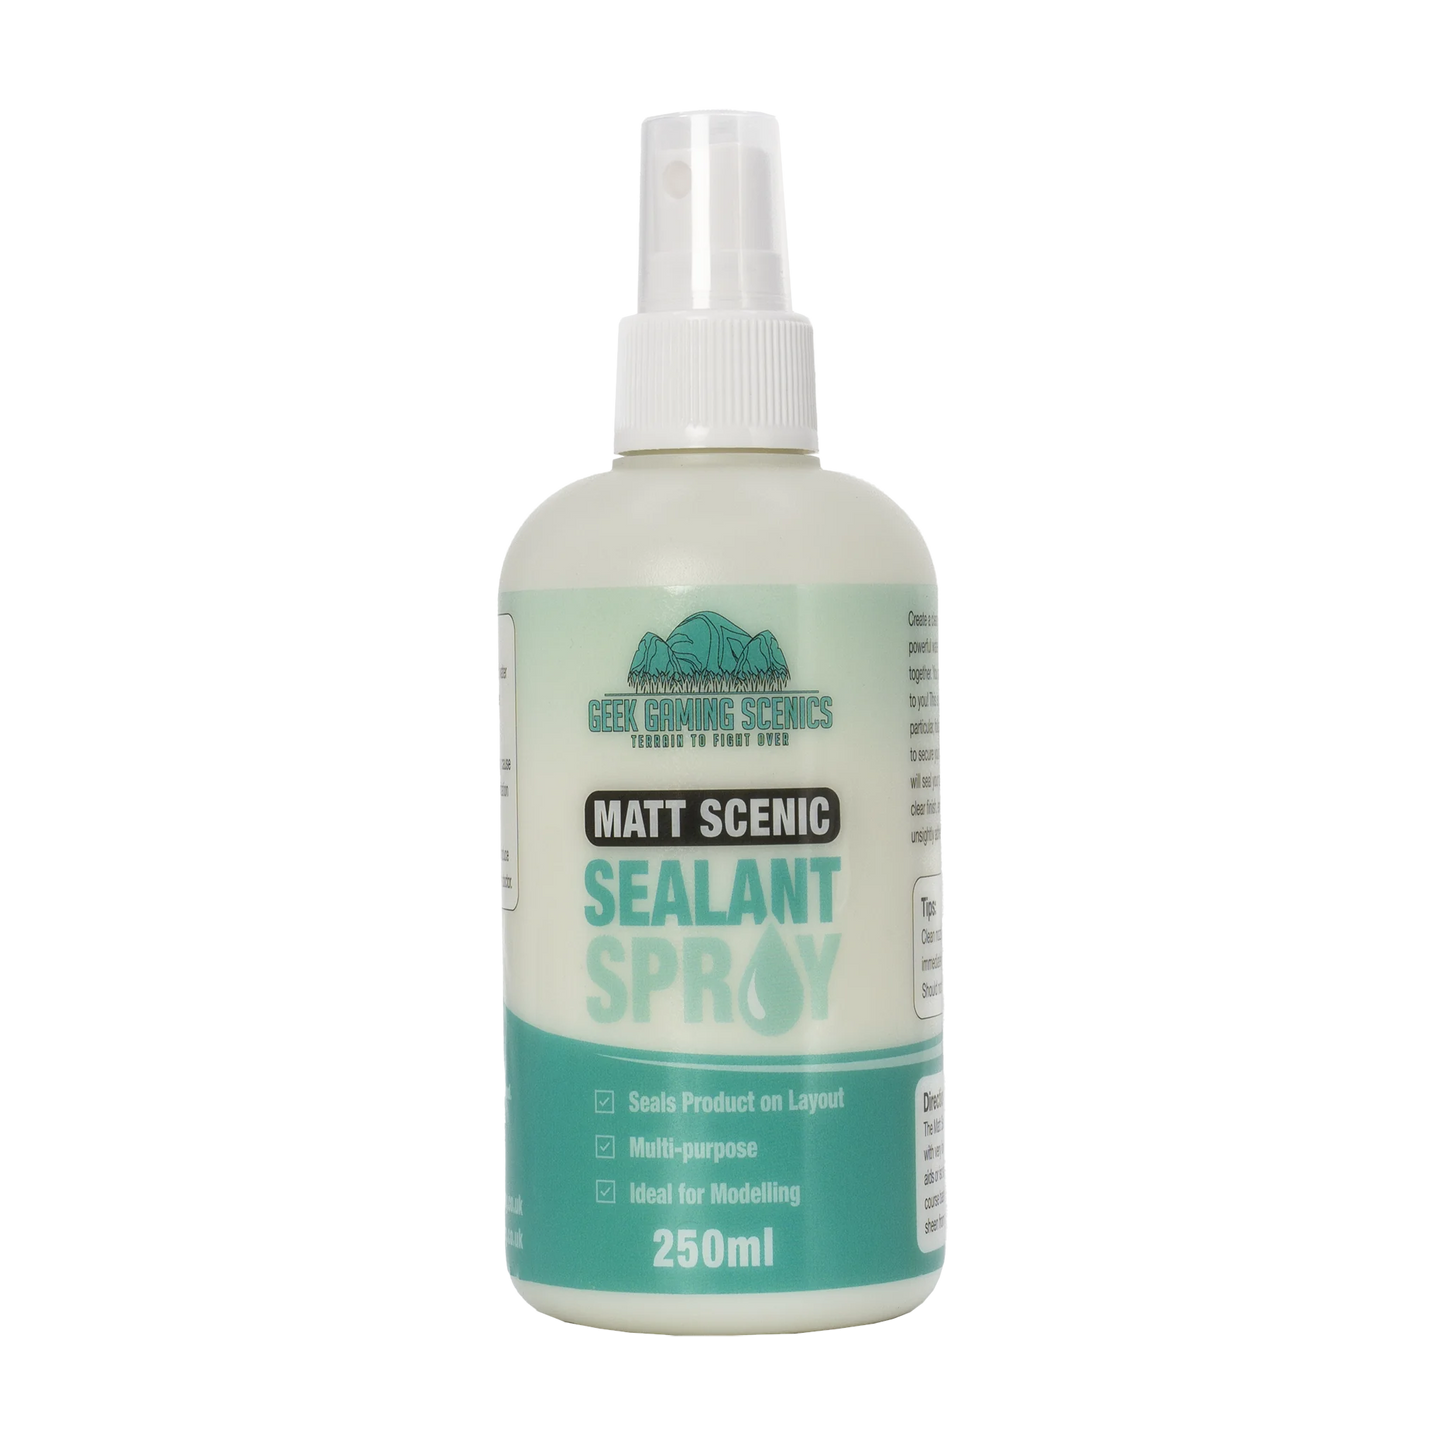 Matt Scenic Sealant Spray